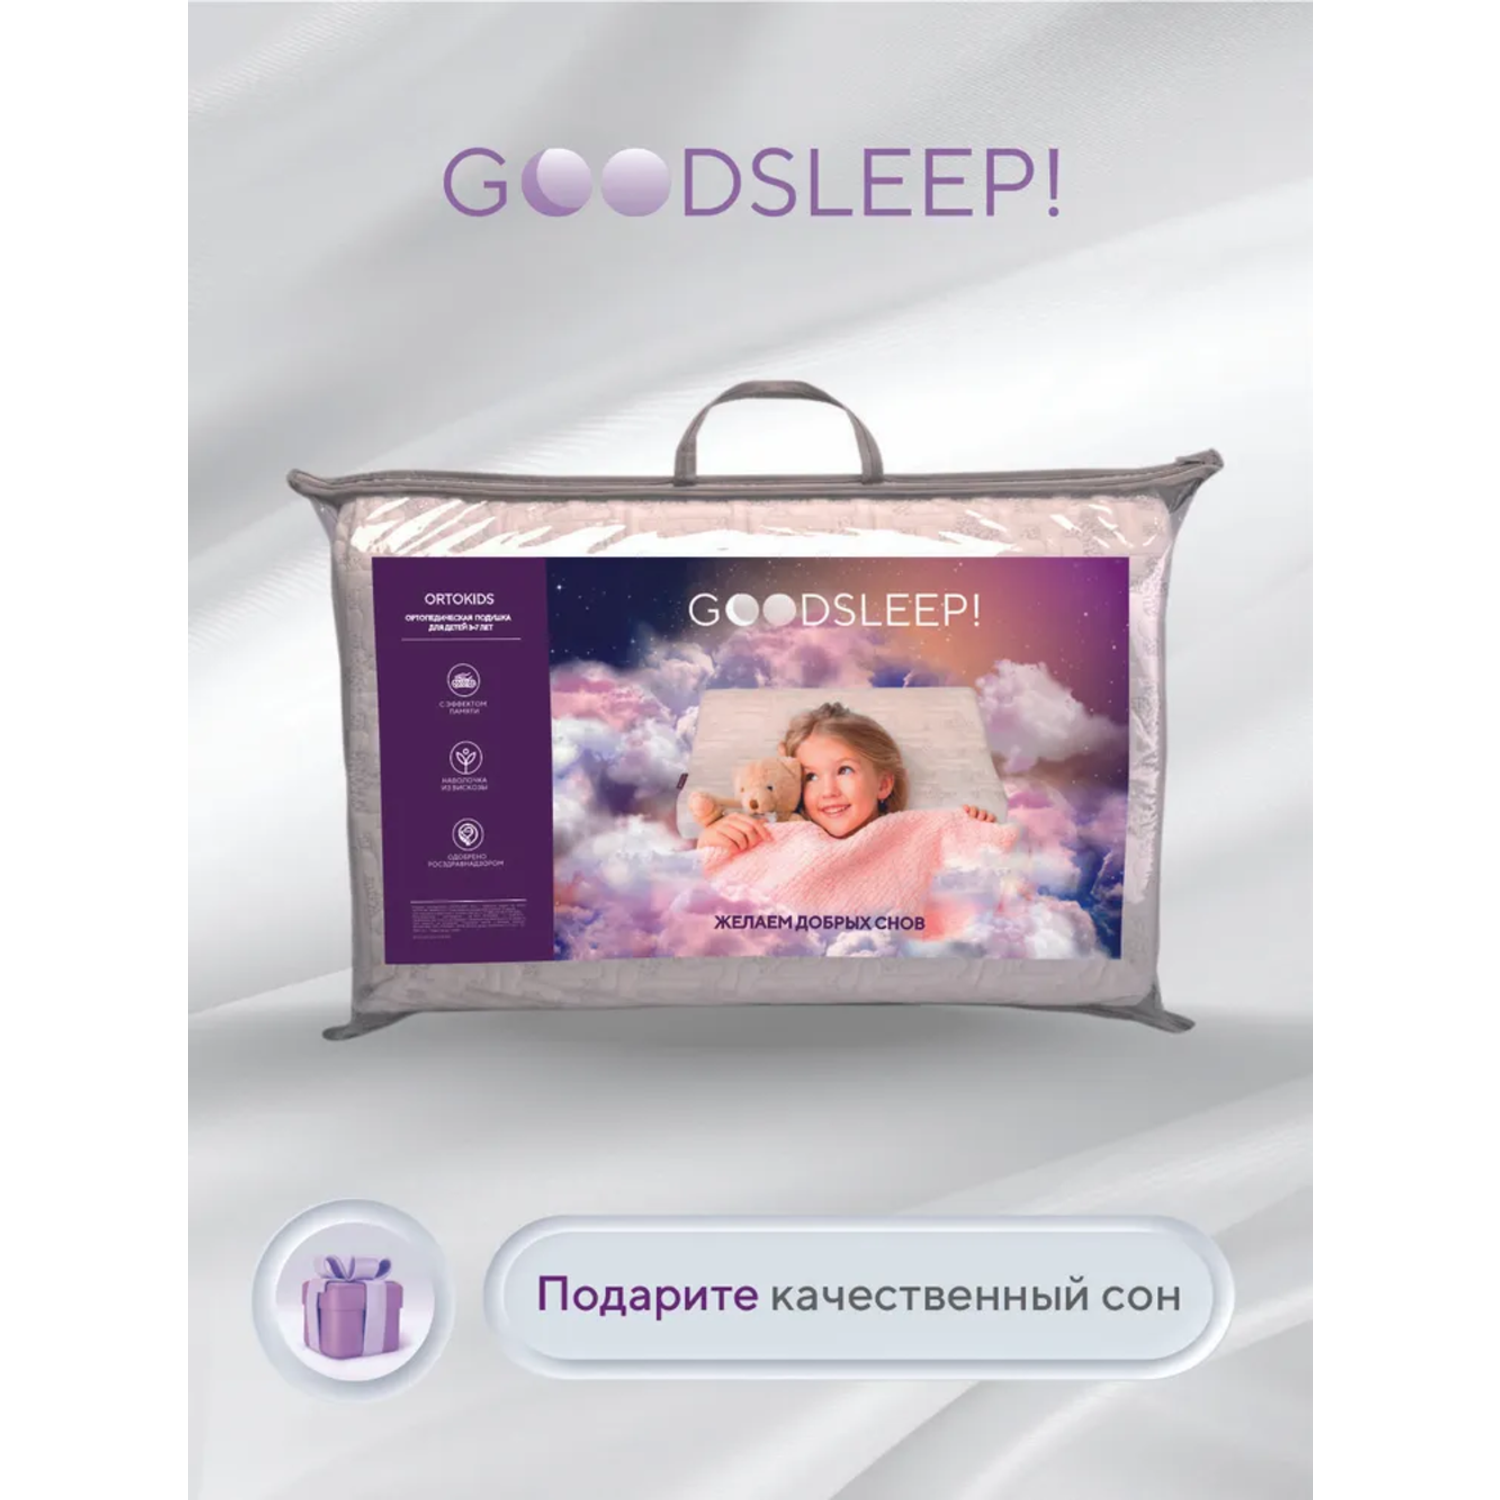 Ортопедическая подушка Goodsleep! для детей от 3-х лет - фото 2